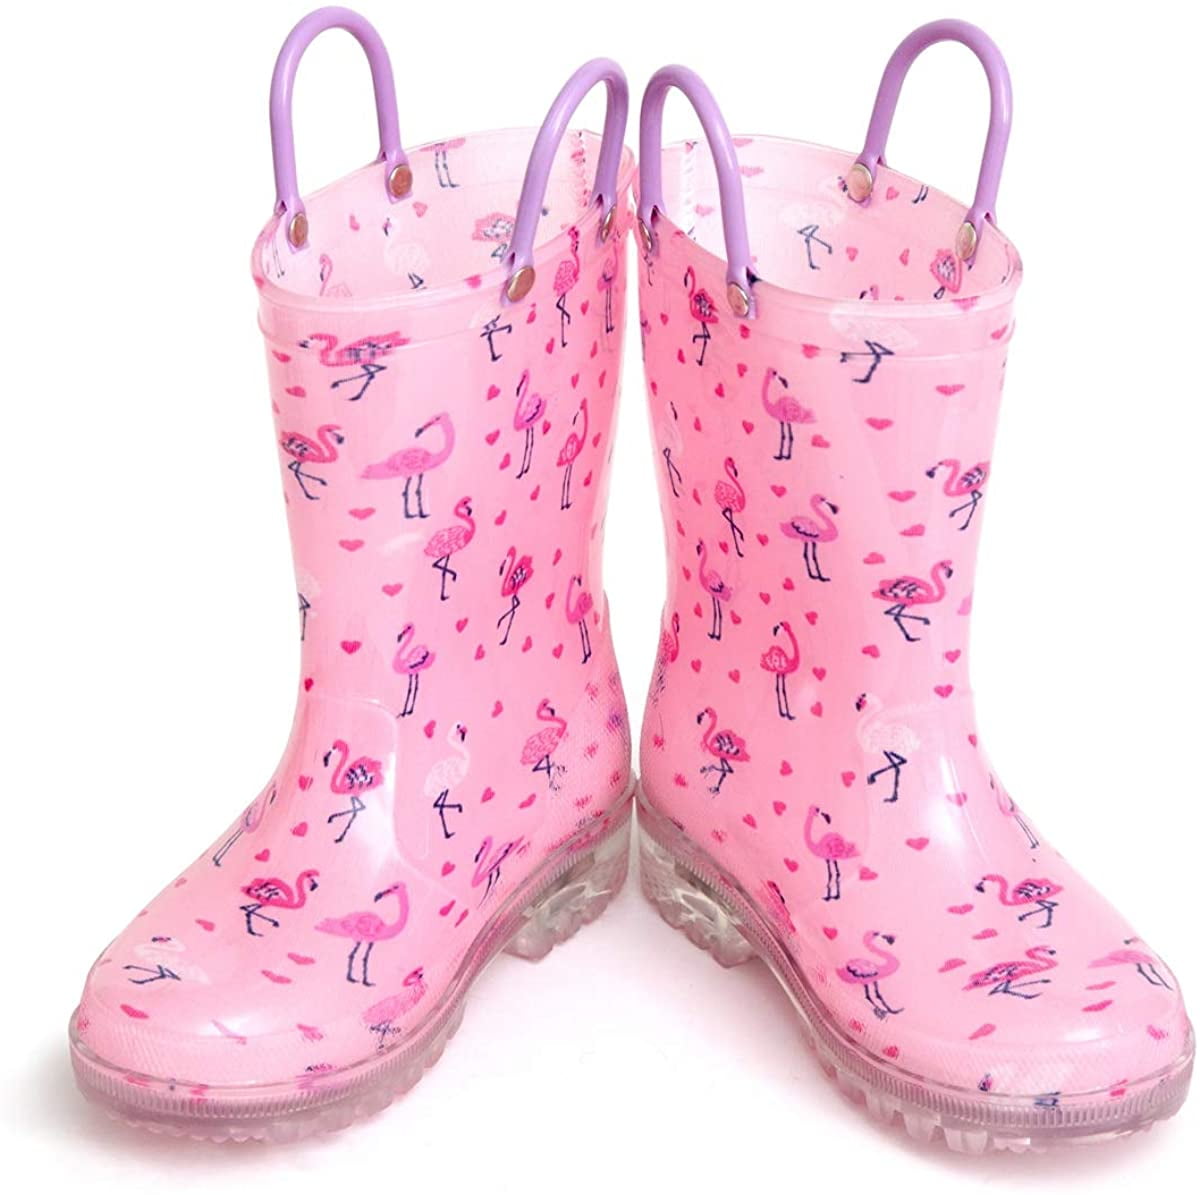 Hugrain Light Up Rain Boots for Little Kids 